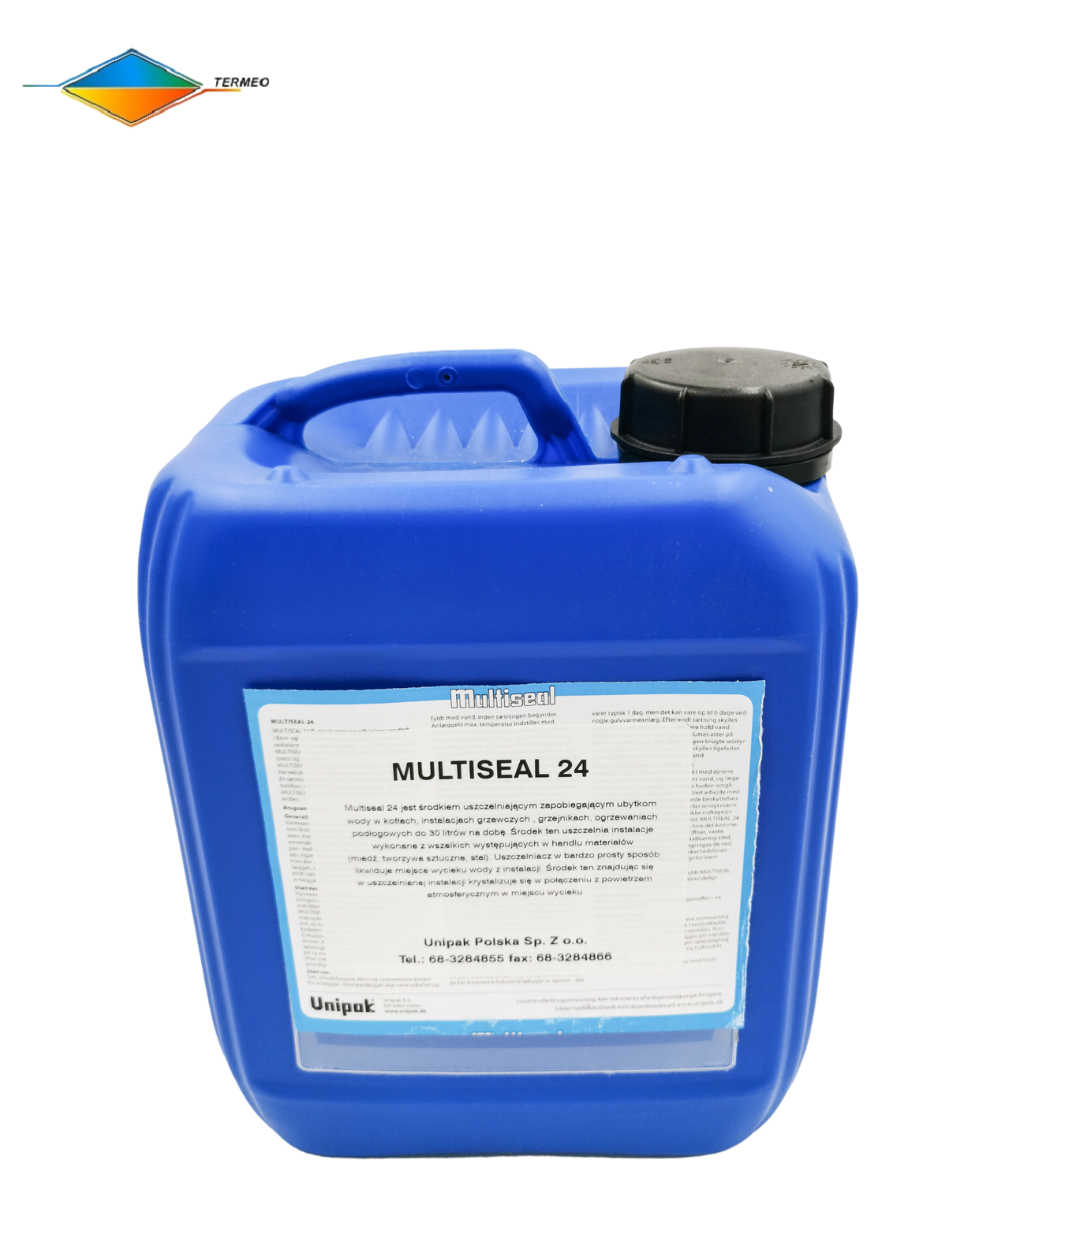 Multiseal 24 uszczelniacz do instalacji CO wyciek do 5 litrów na dobę